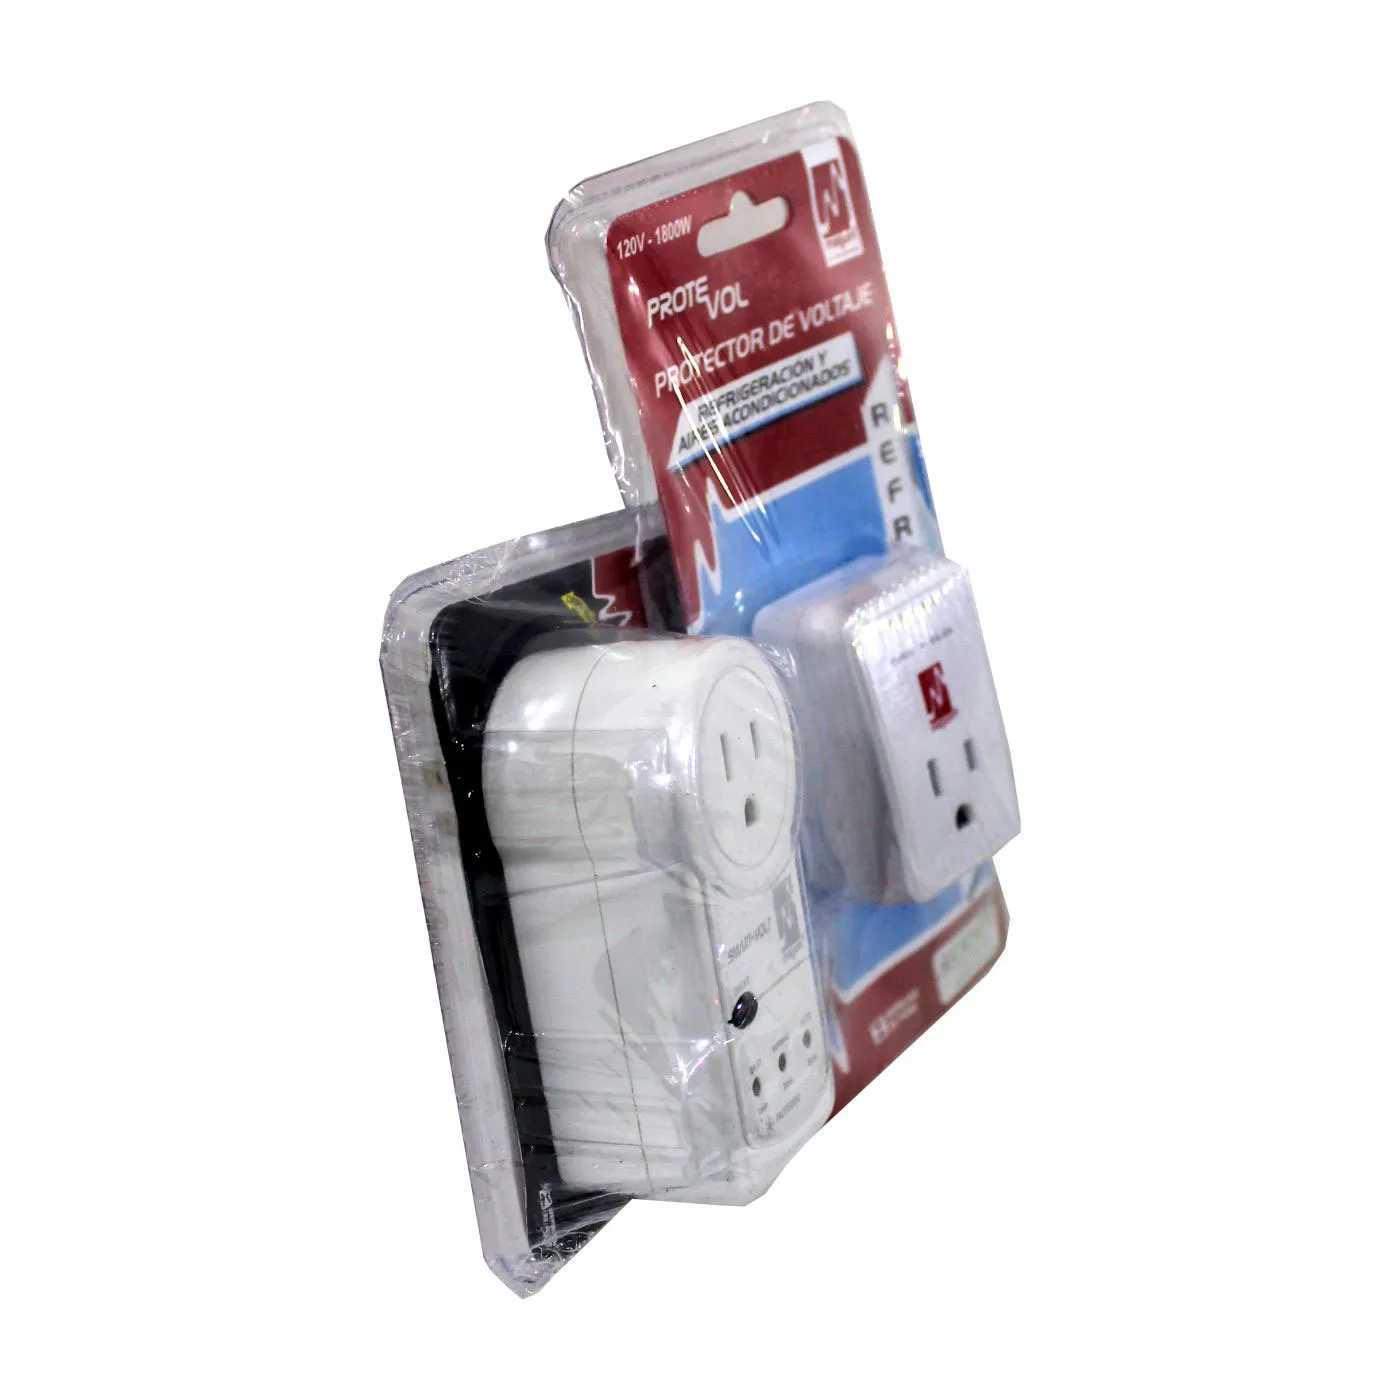 Kit MAGON Protector de Voltaje de Refrigeración + Protector de Voltaje Smart Multifuncional